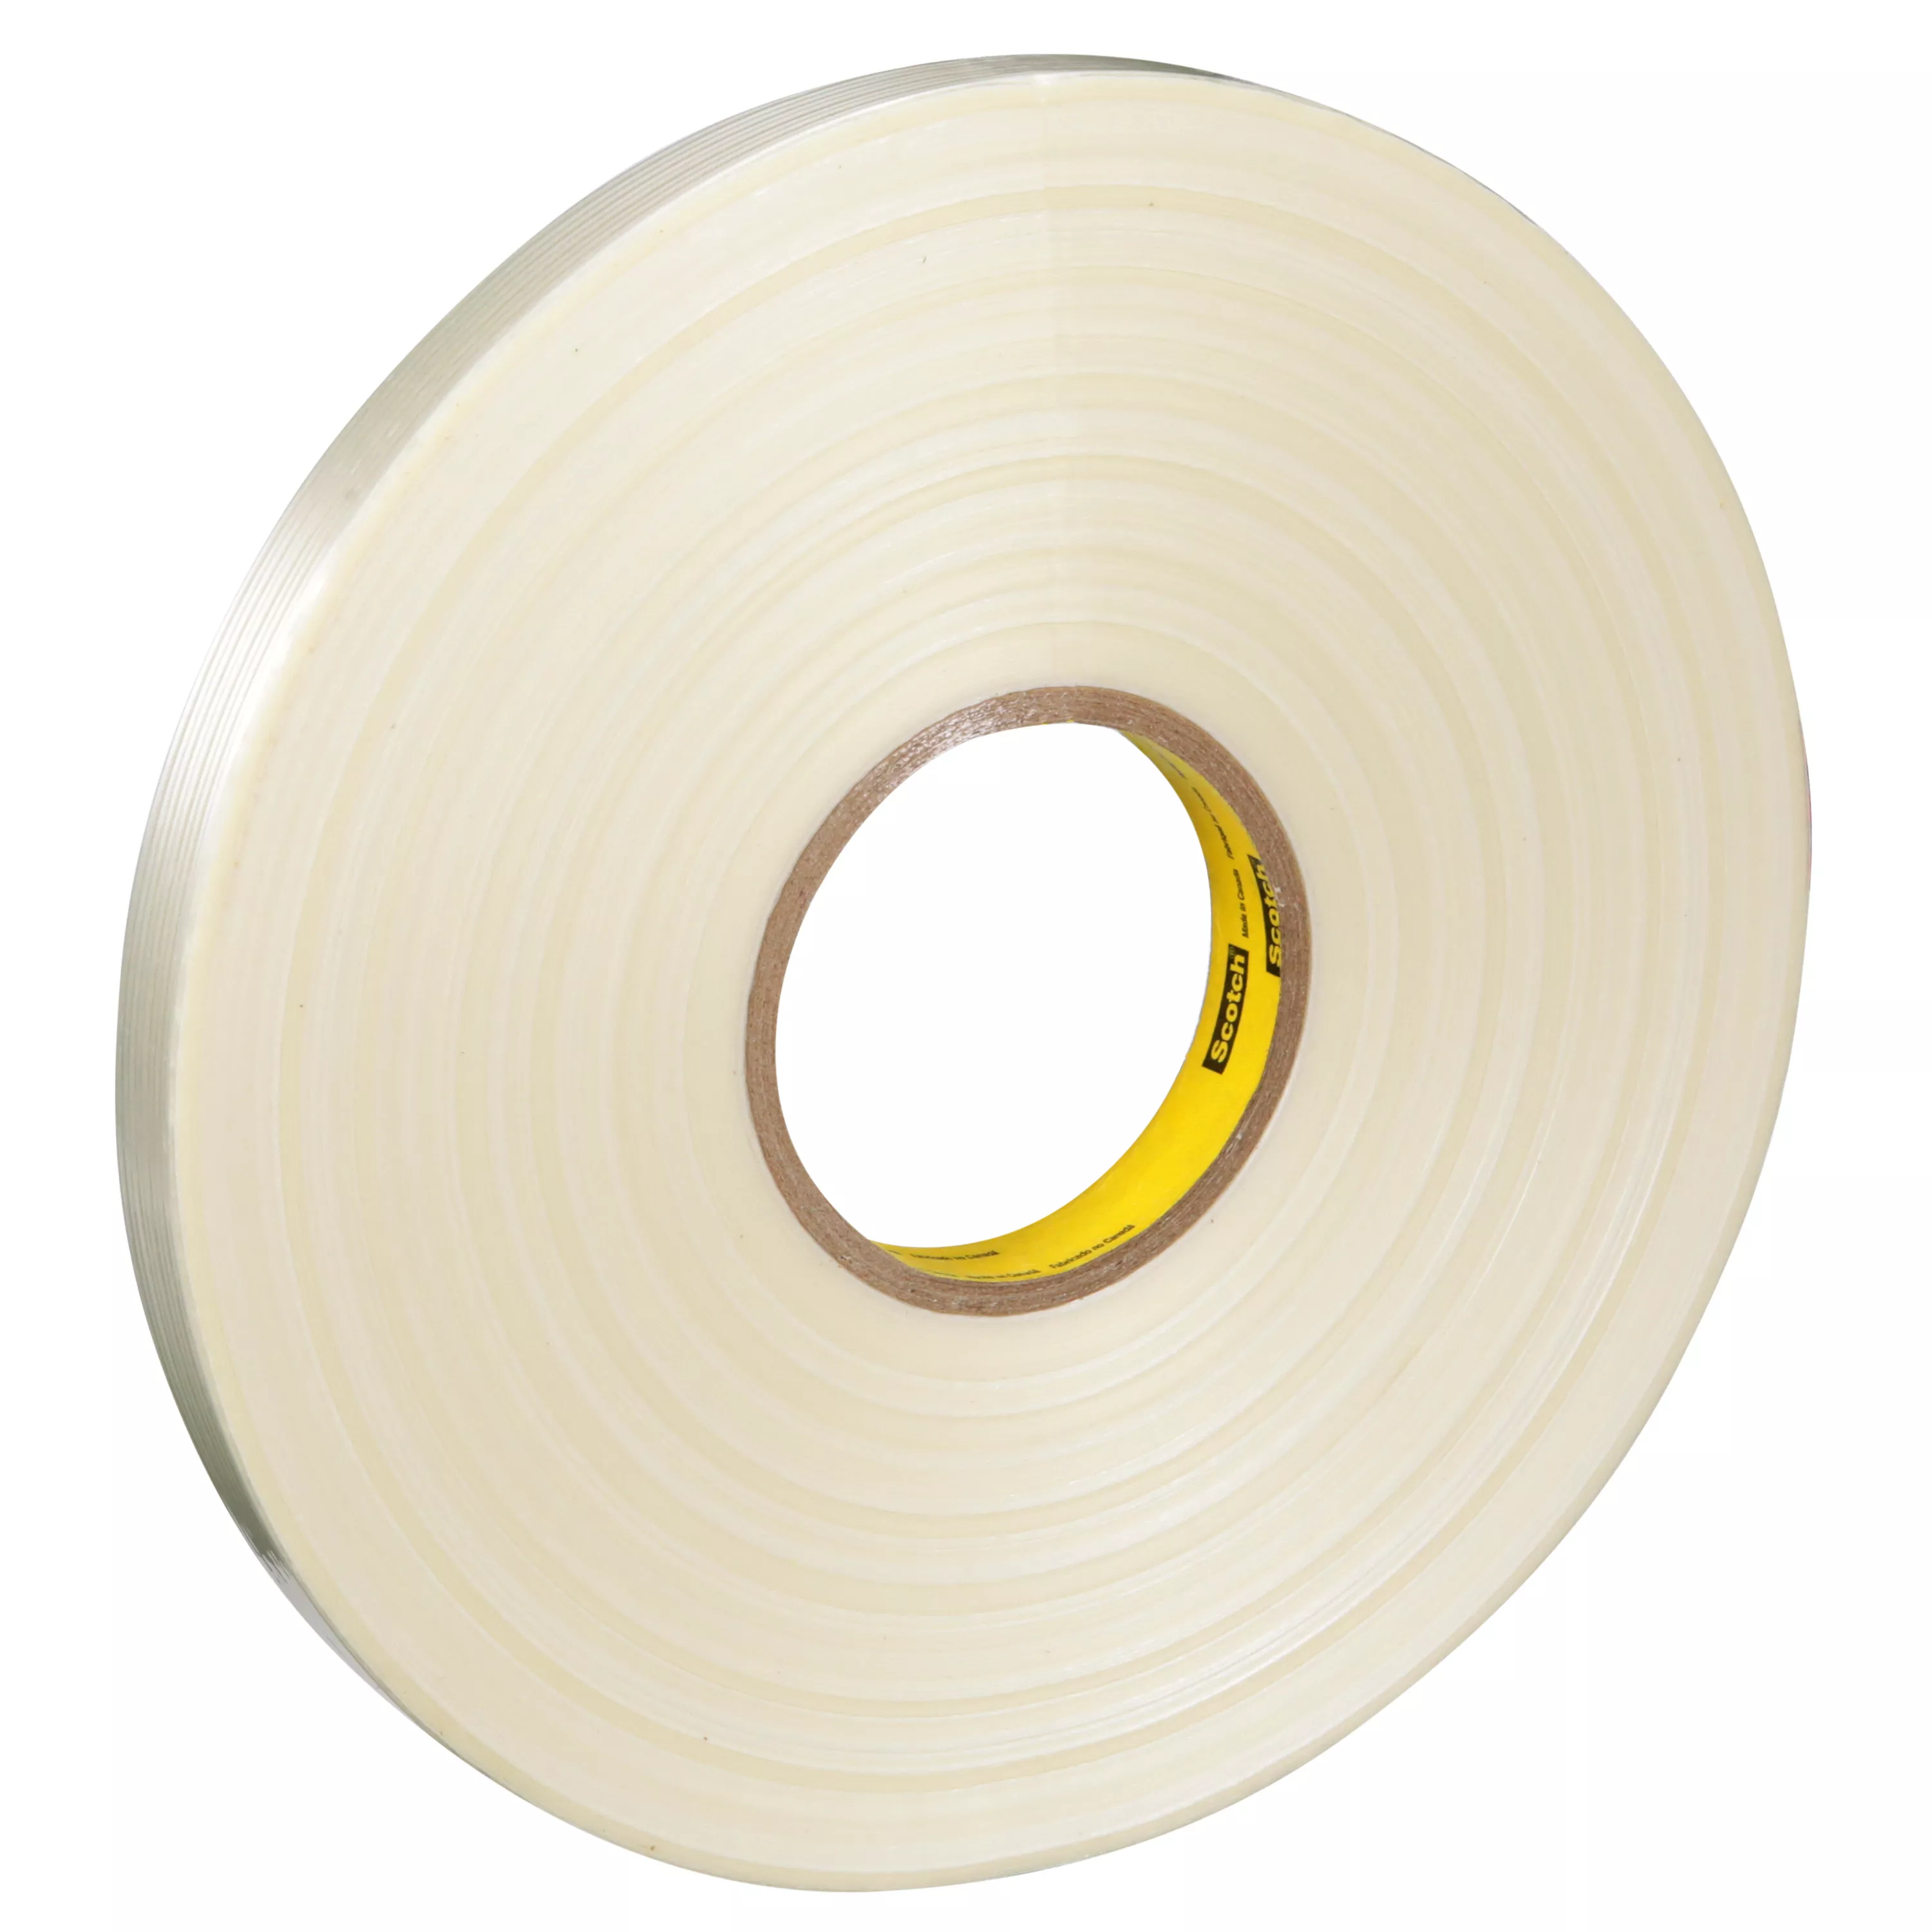 Scotch® Filament Tape 897, Clear, 18 mm x 330 m, 5 mil, 8 Rolls/Case